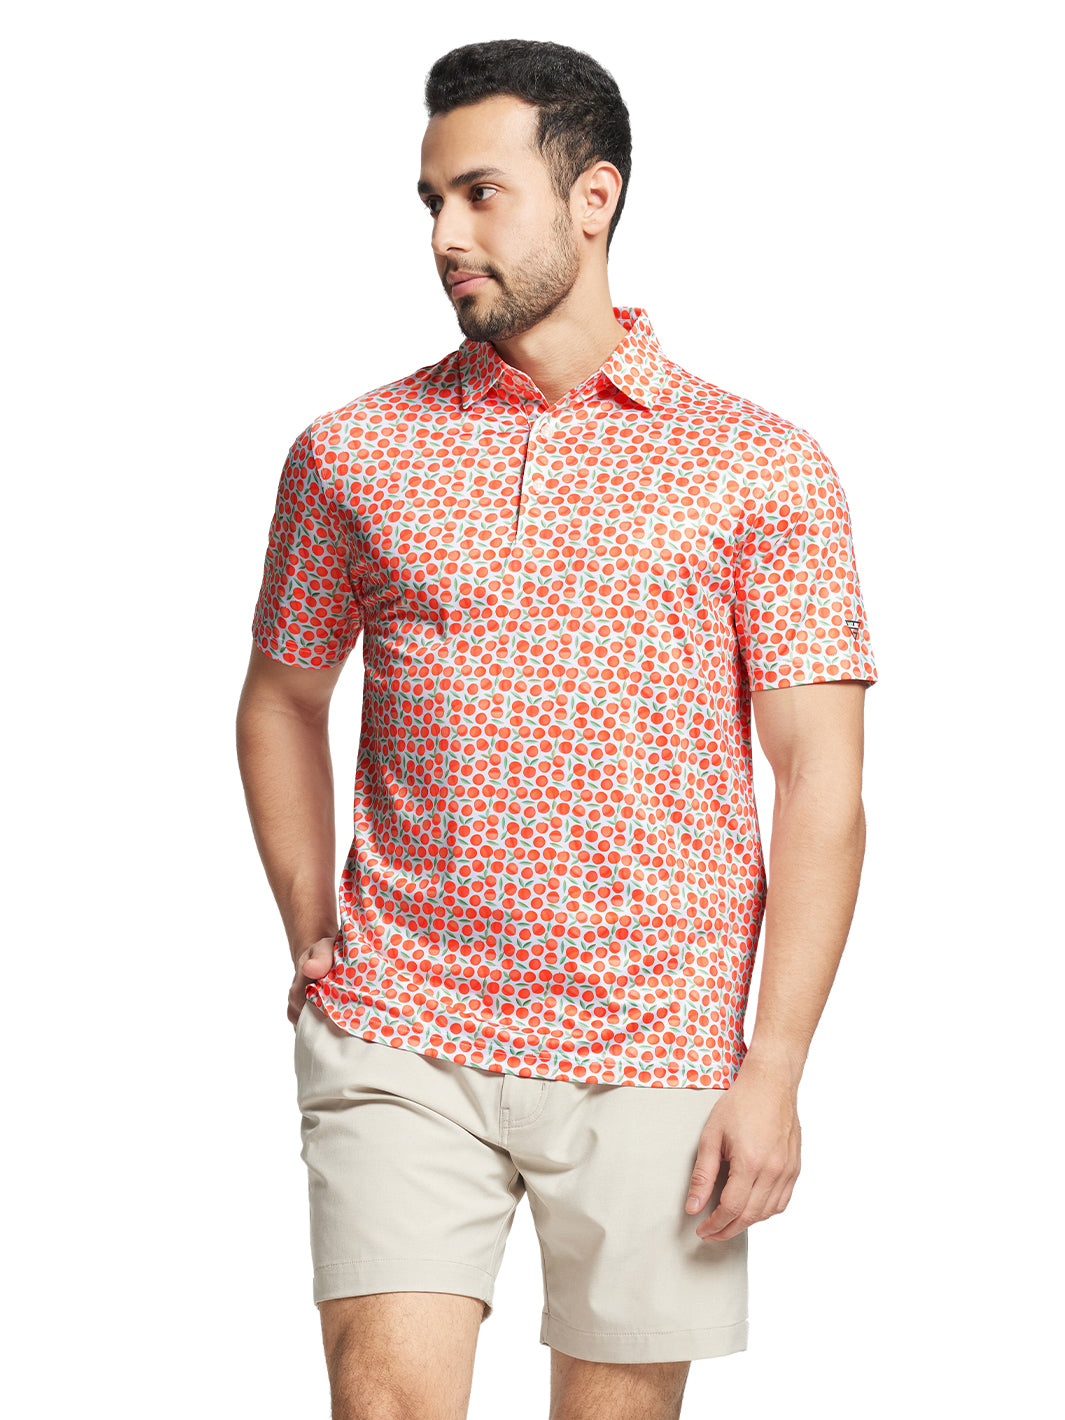 Men's Printed Golf Shirts-Peach